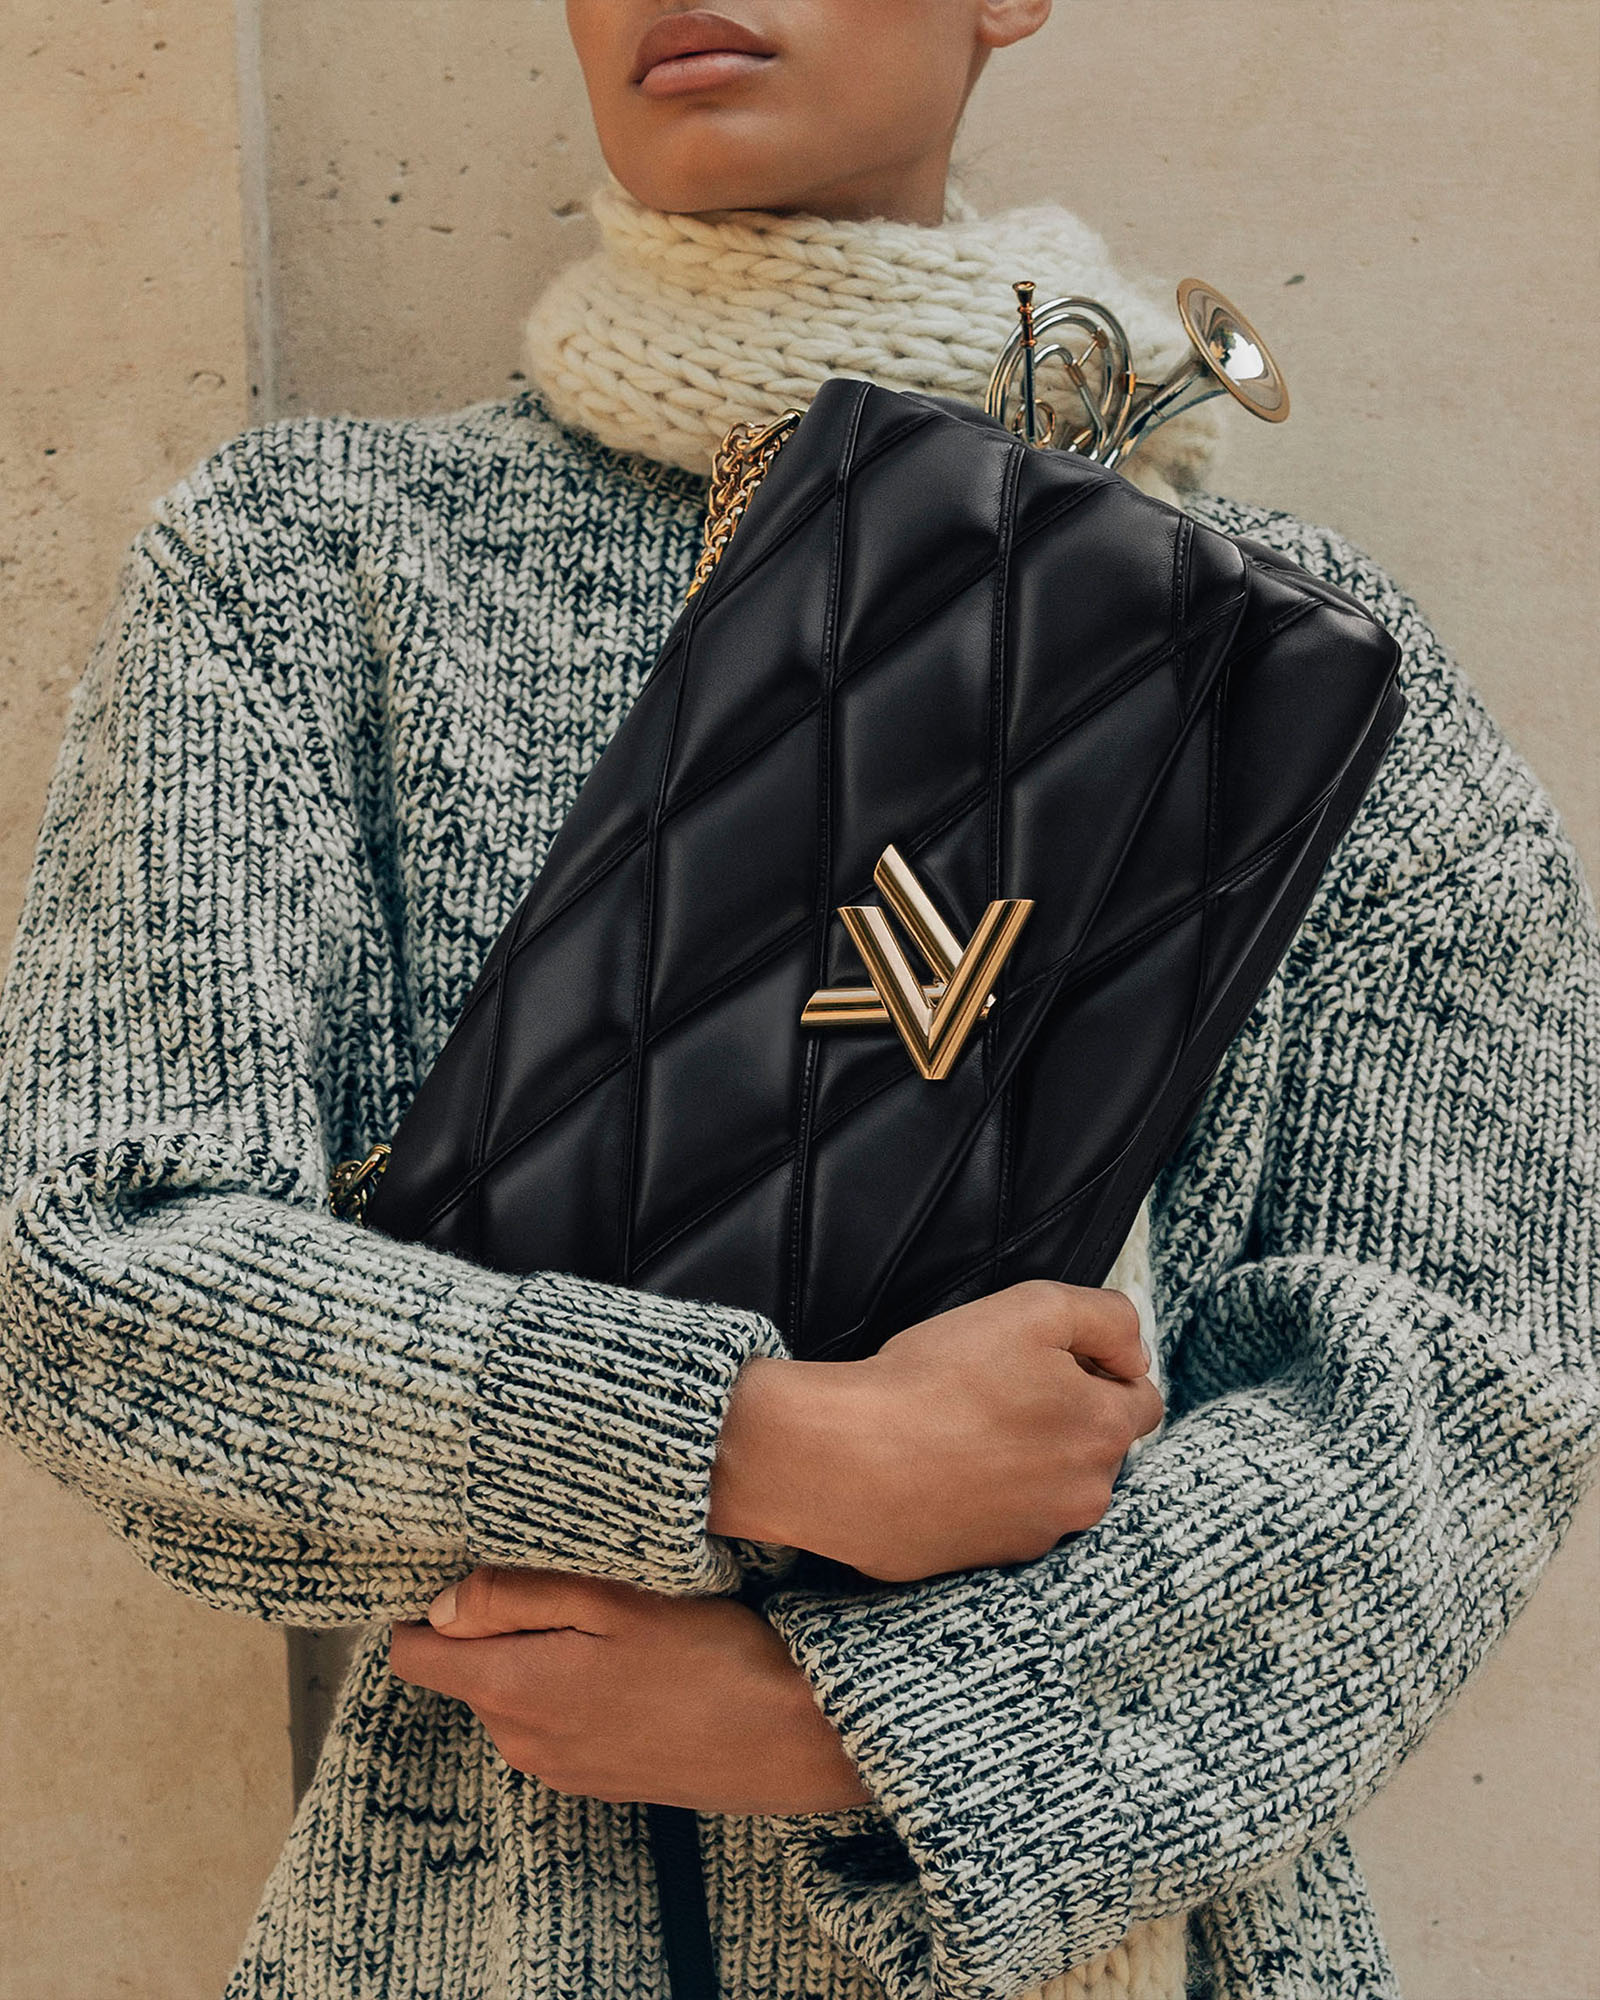 Nicolas Ghesquière Revists His First Louis Vuitton Bag Design